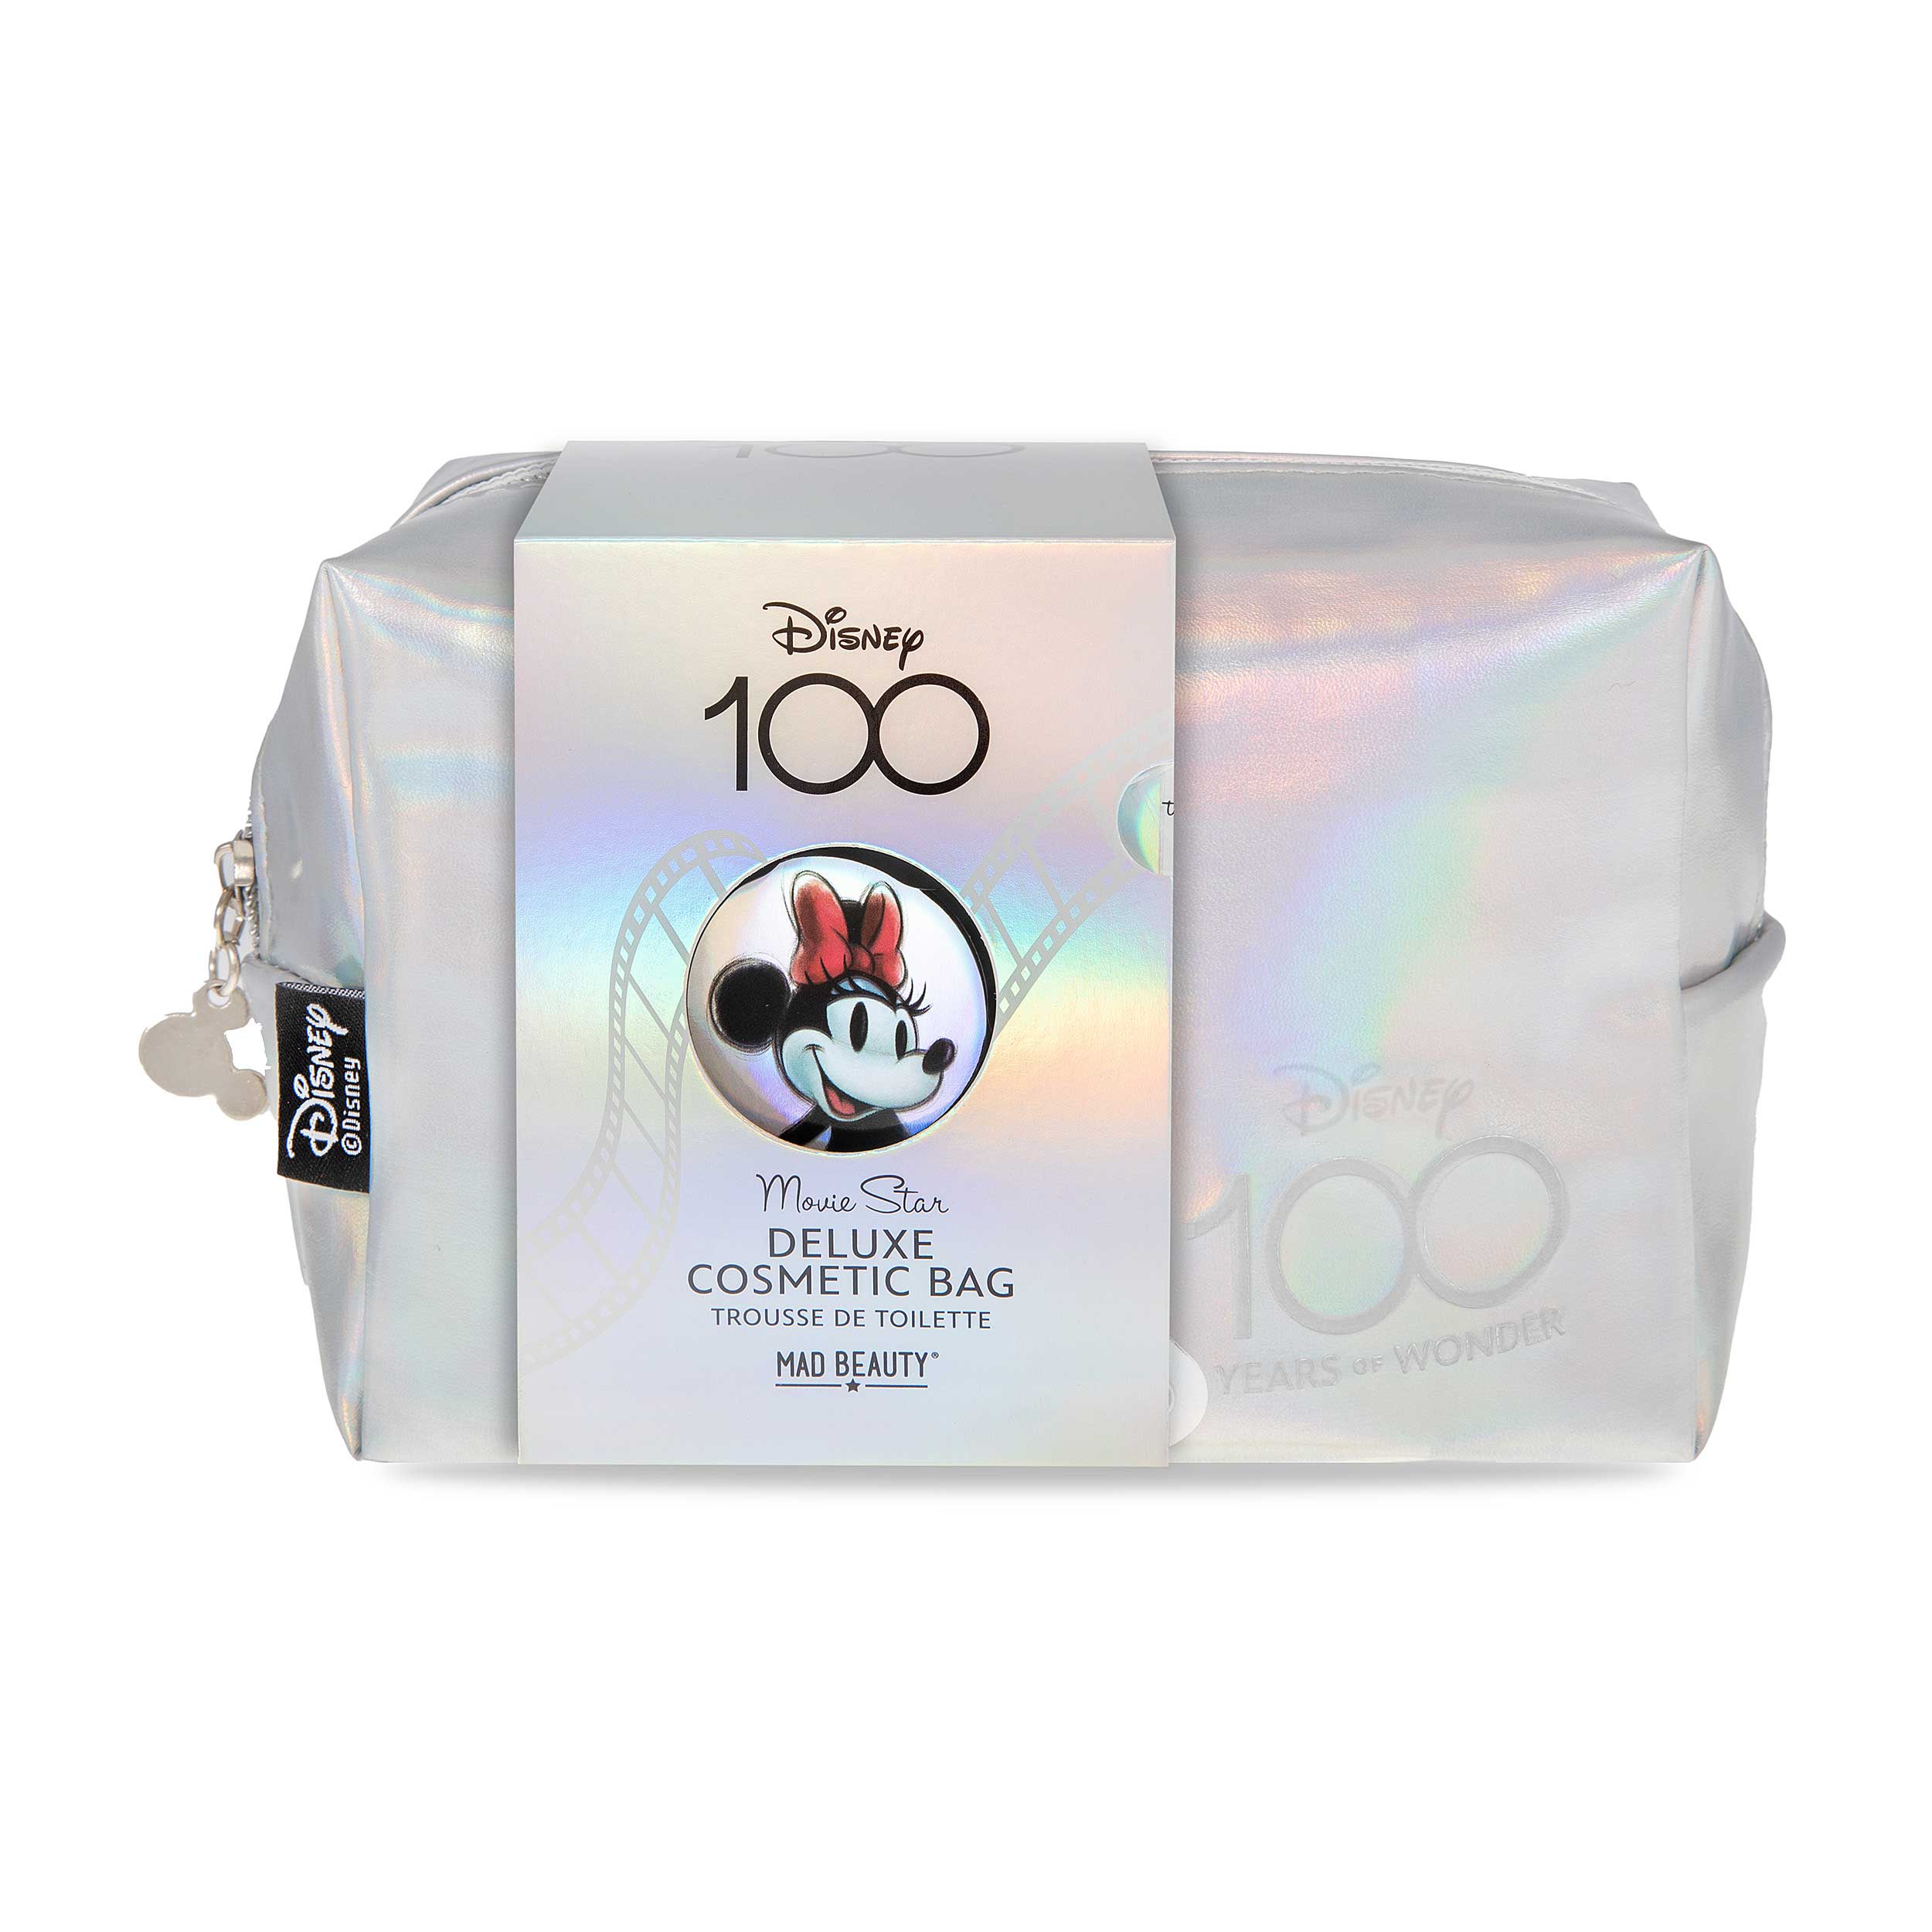 Disney 100 Cosmetic Bag